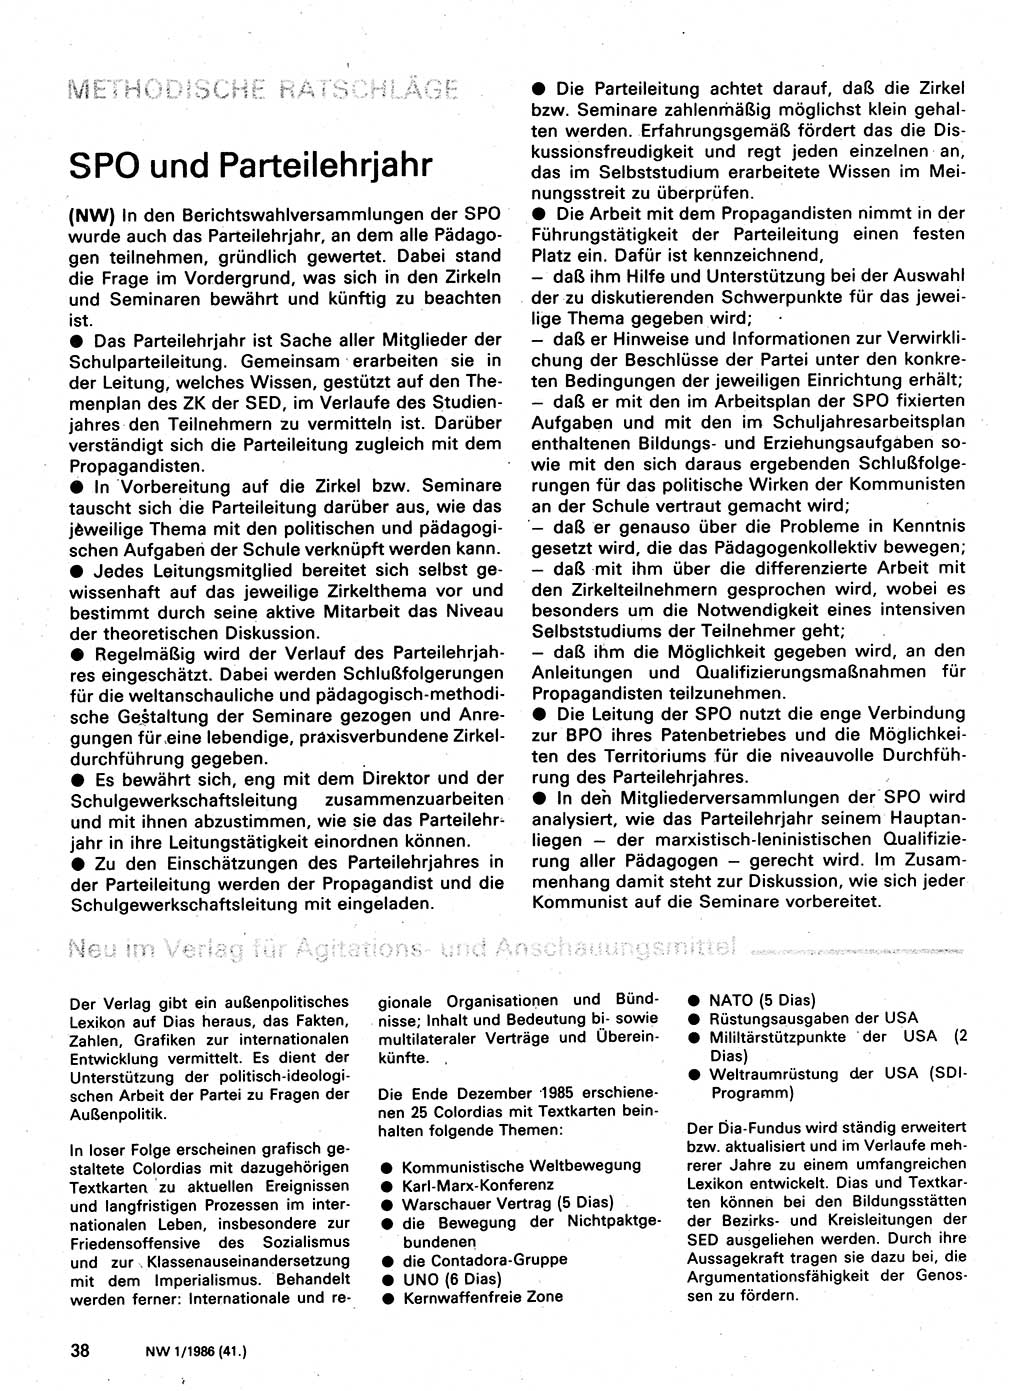 Neuer Weg (NW), Organ des Zentralkomitees (ZK) der SED (Sozialistische Einheitspartei Deutschlands) für Fragen des Parteilebens, 41. Jahrgang [Deutsche Demokratische Republik (DDR)] 1986, Seite 38 (NW ZK SED DDR 1986, S. 38)